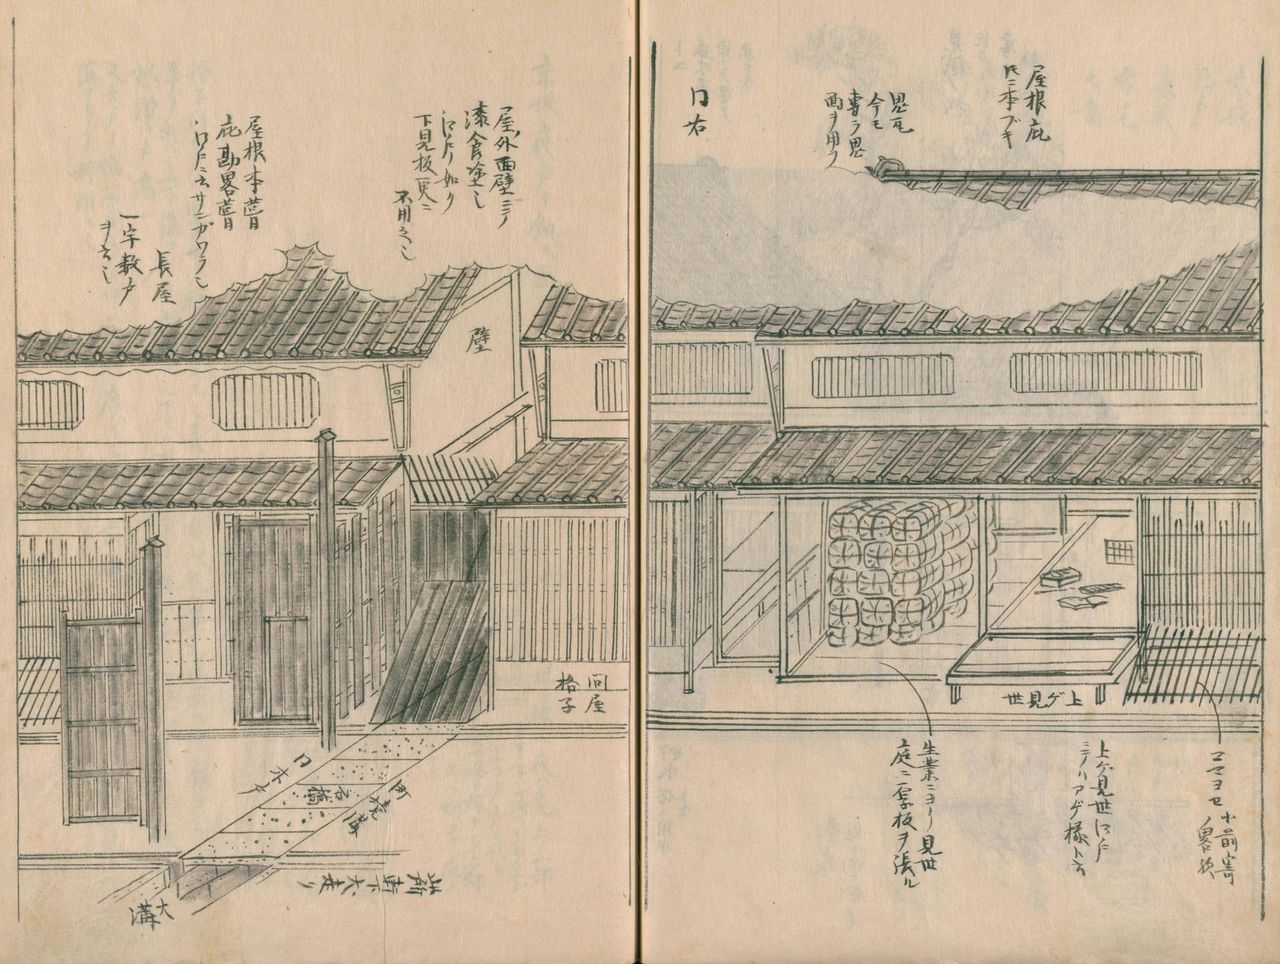 《京阪巨戶豪之家宅圖①》堆放秸稈包的地方是京都商店的陳列架，稱為「上見世」。從室町時代起，上見世就一直是京都商店的一大特色。左邊有木門，穿過木門就是長屋。